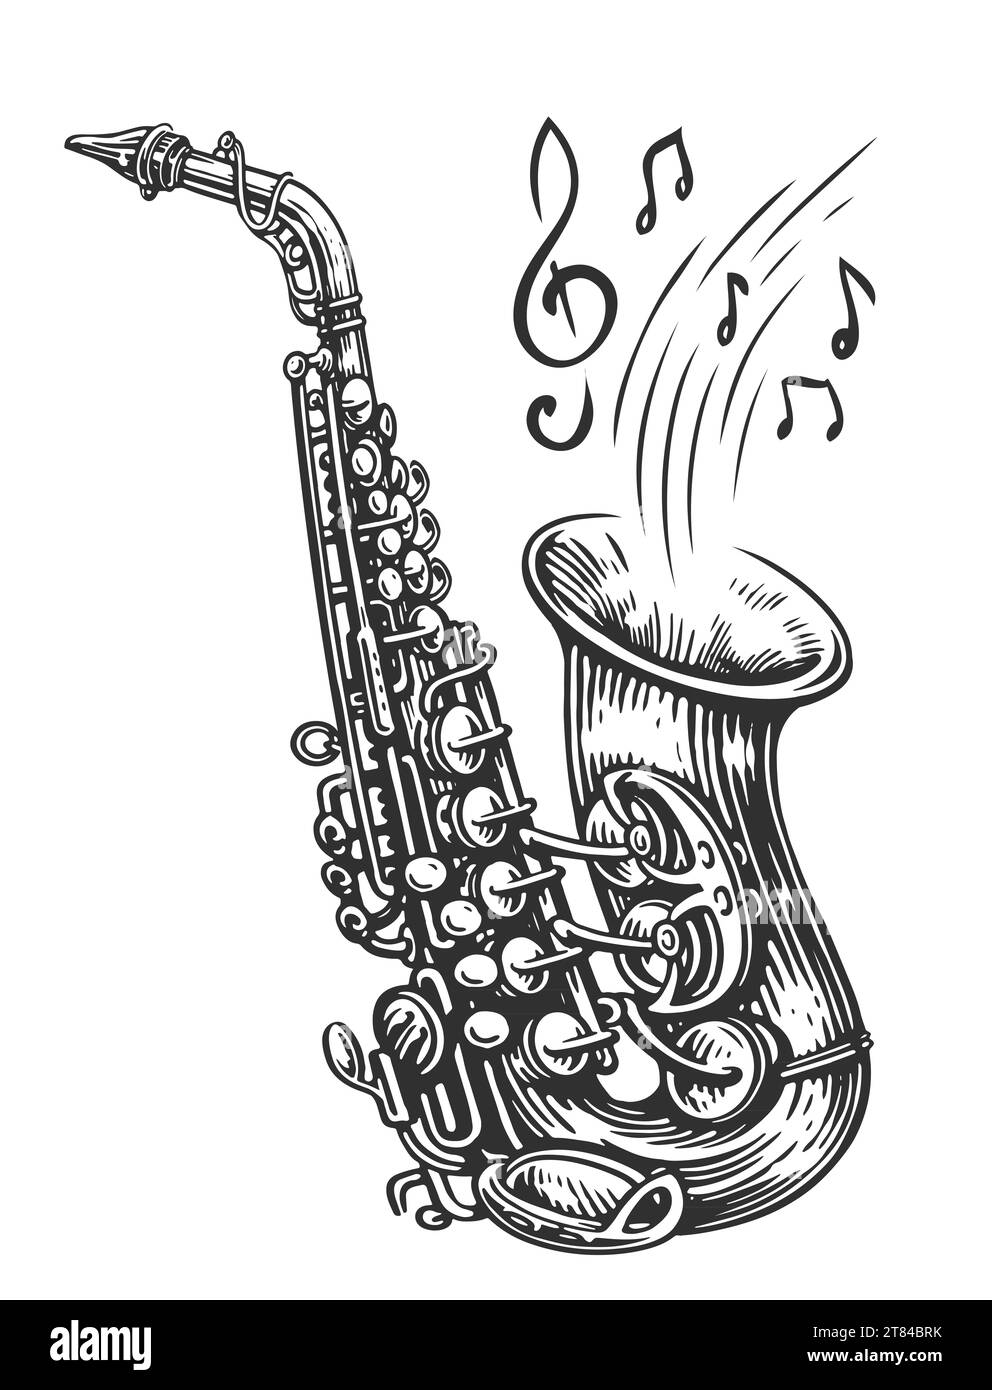 Saxophon mit Noten, die herauskommen. Live-Jazz-Musik, Vintage-Illustration Stockfoto